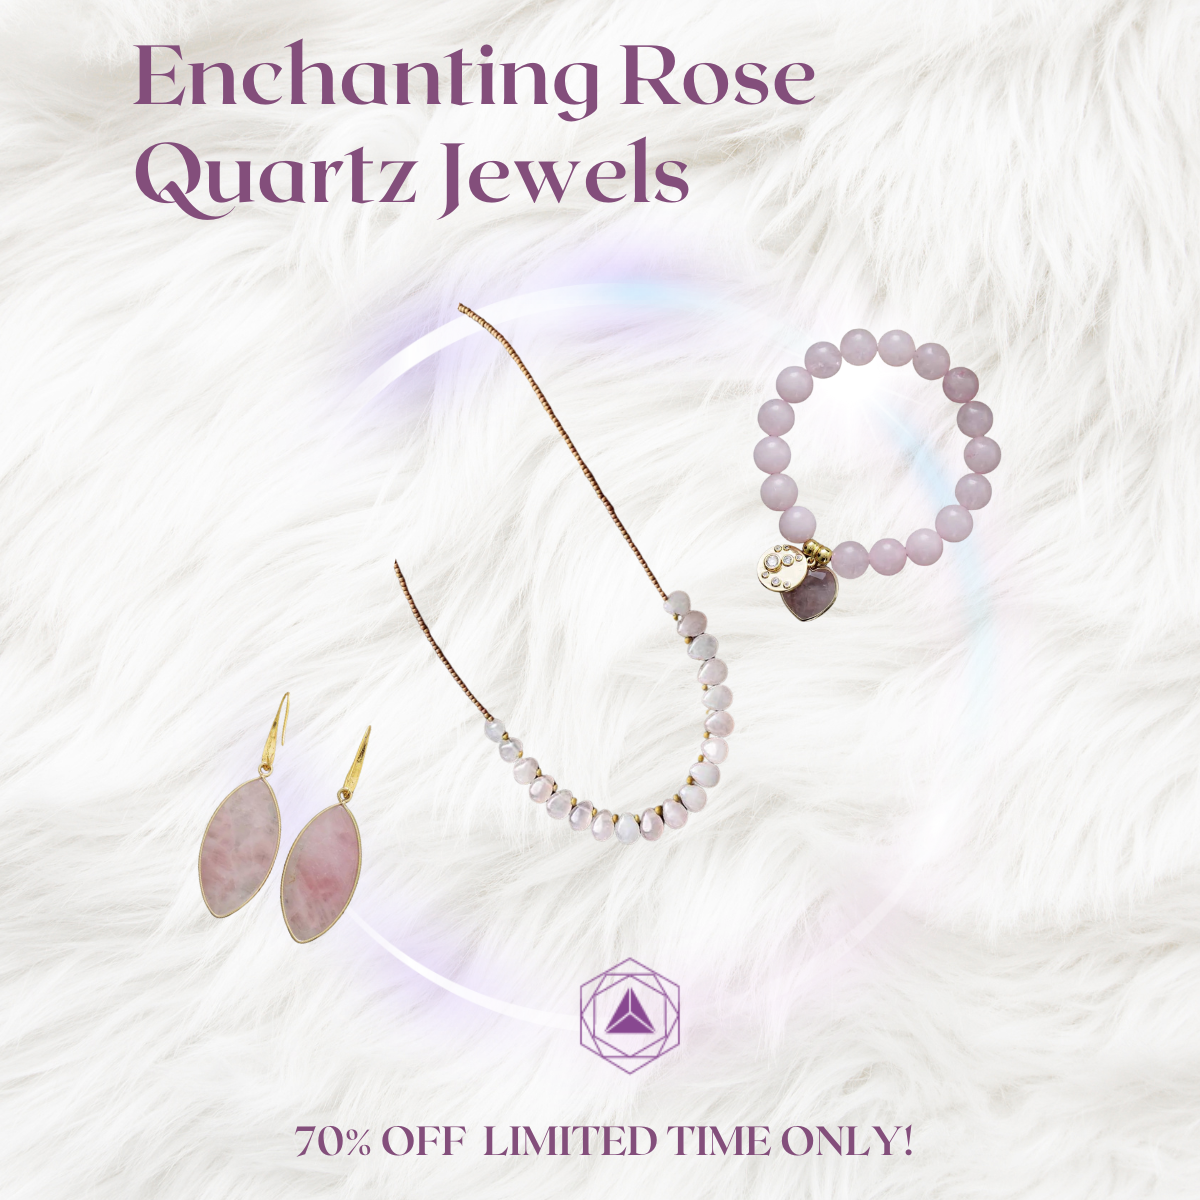 Enchanting Rose Quartz Jewels